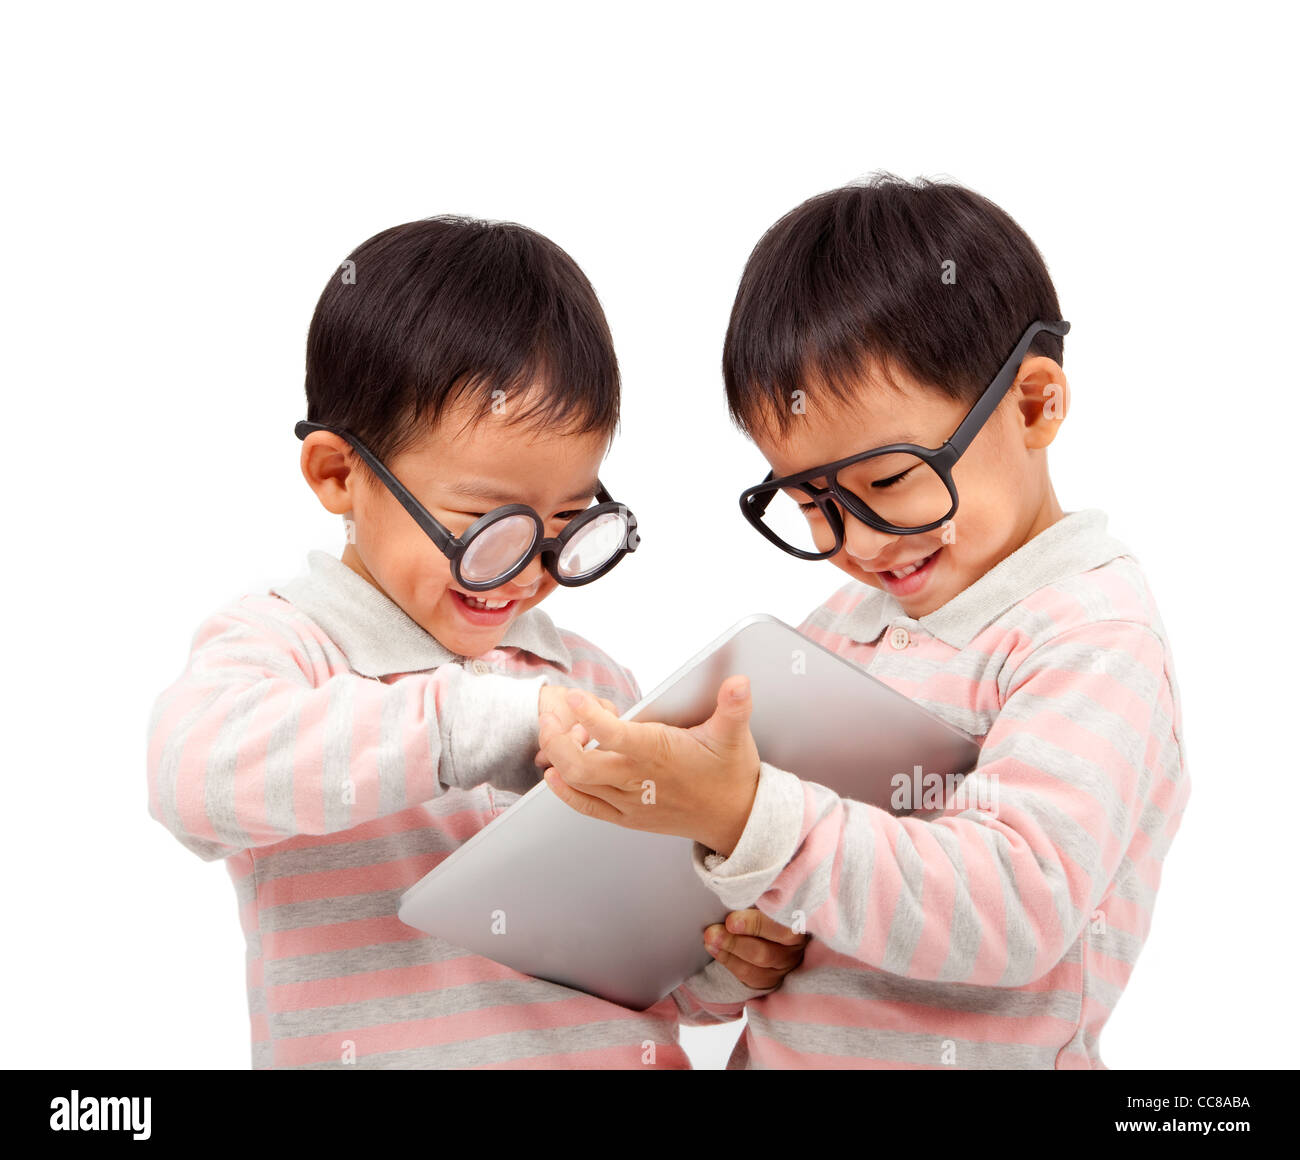 Deux enfants heureux à l'aide de l'ordinateur tablette tactile et isolated on white Banque D'Images